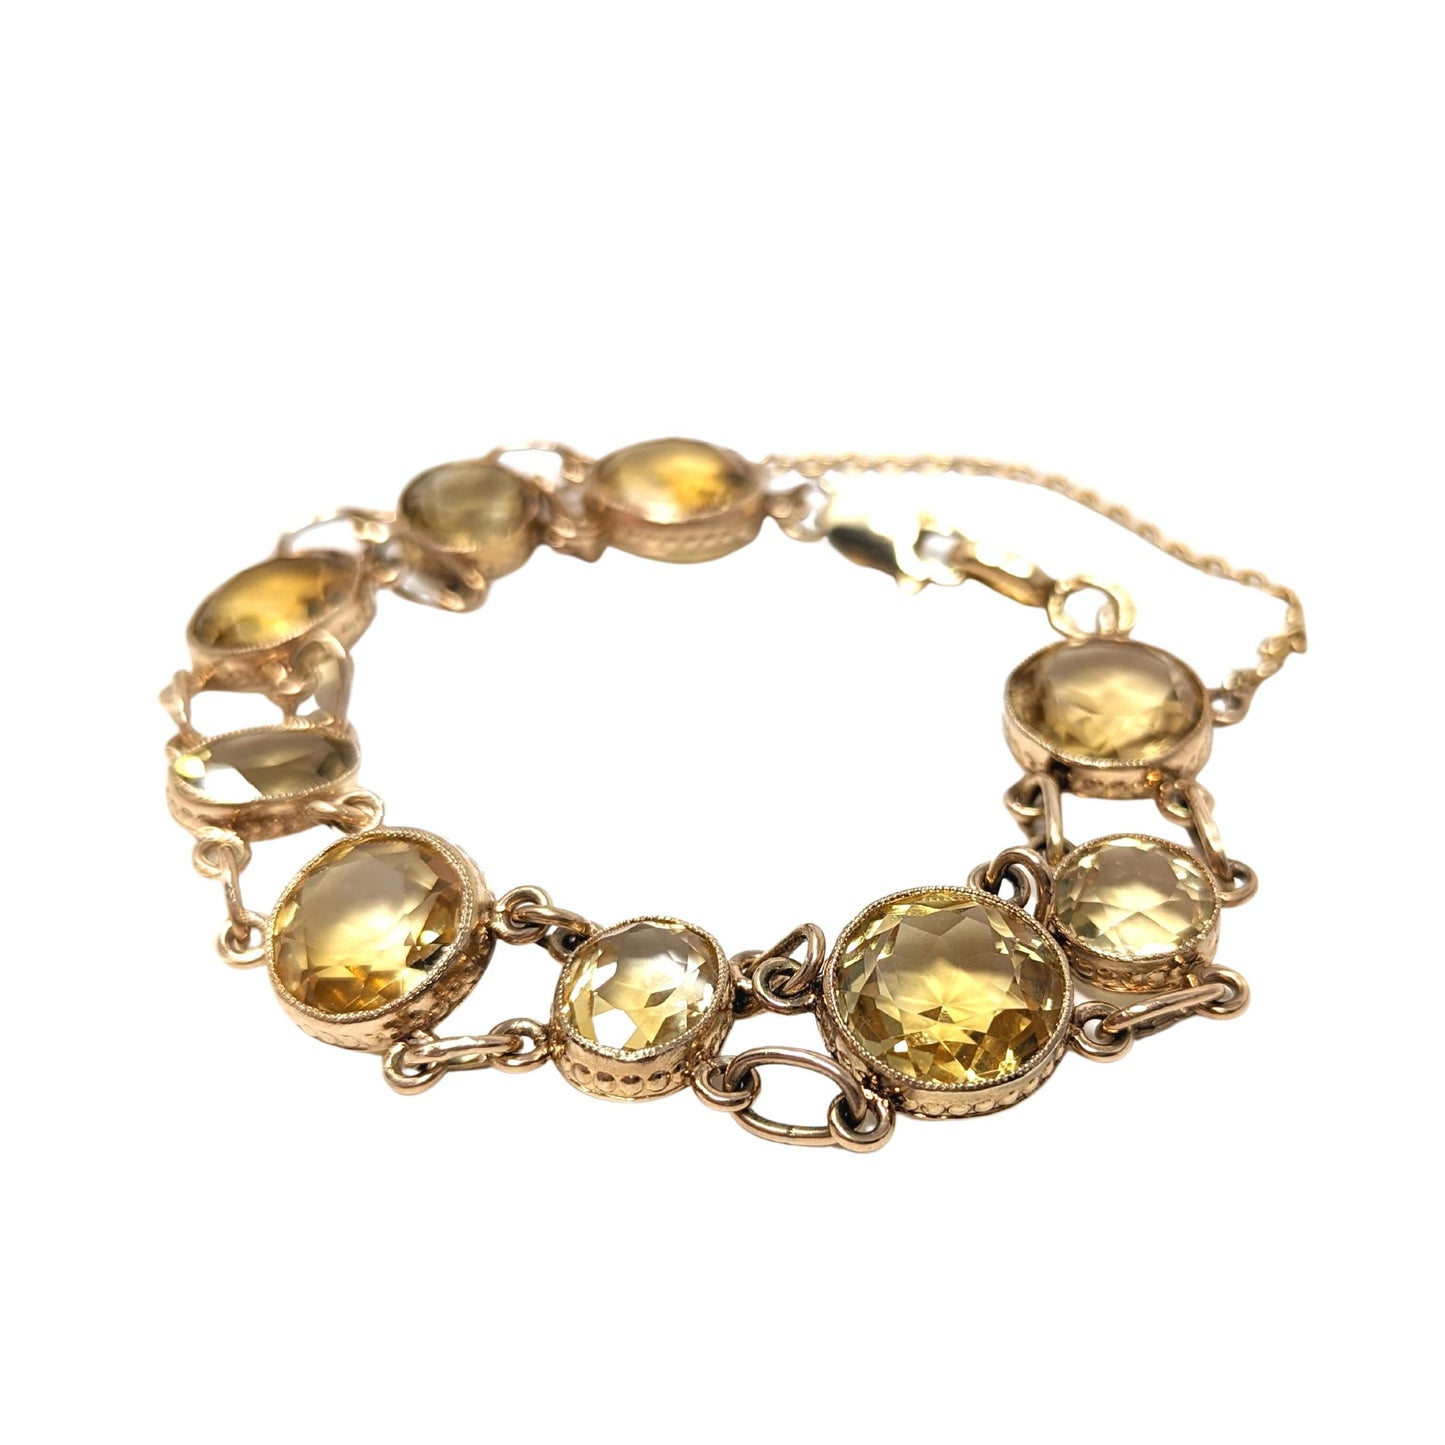 14K Gold Yellow Citrine Bracelet 7 1/4" Long